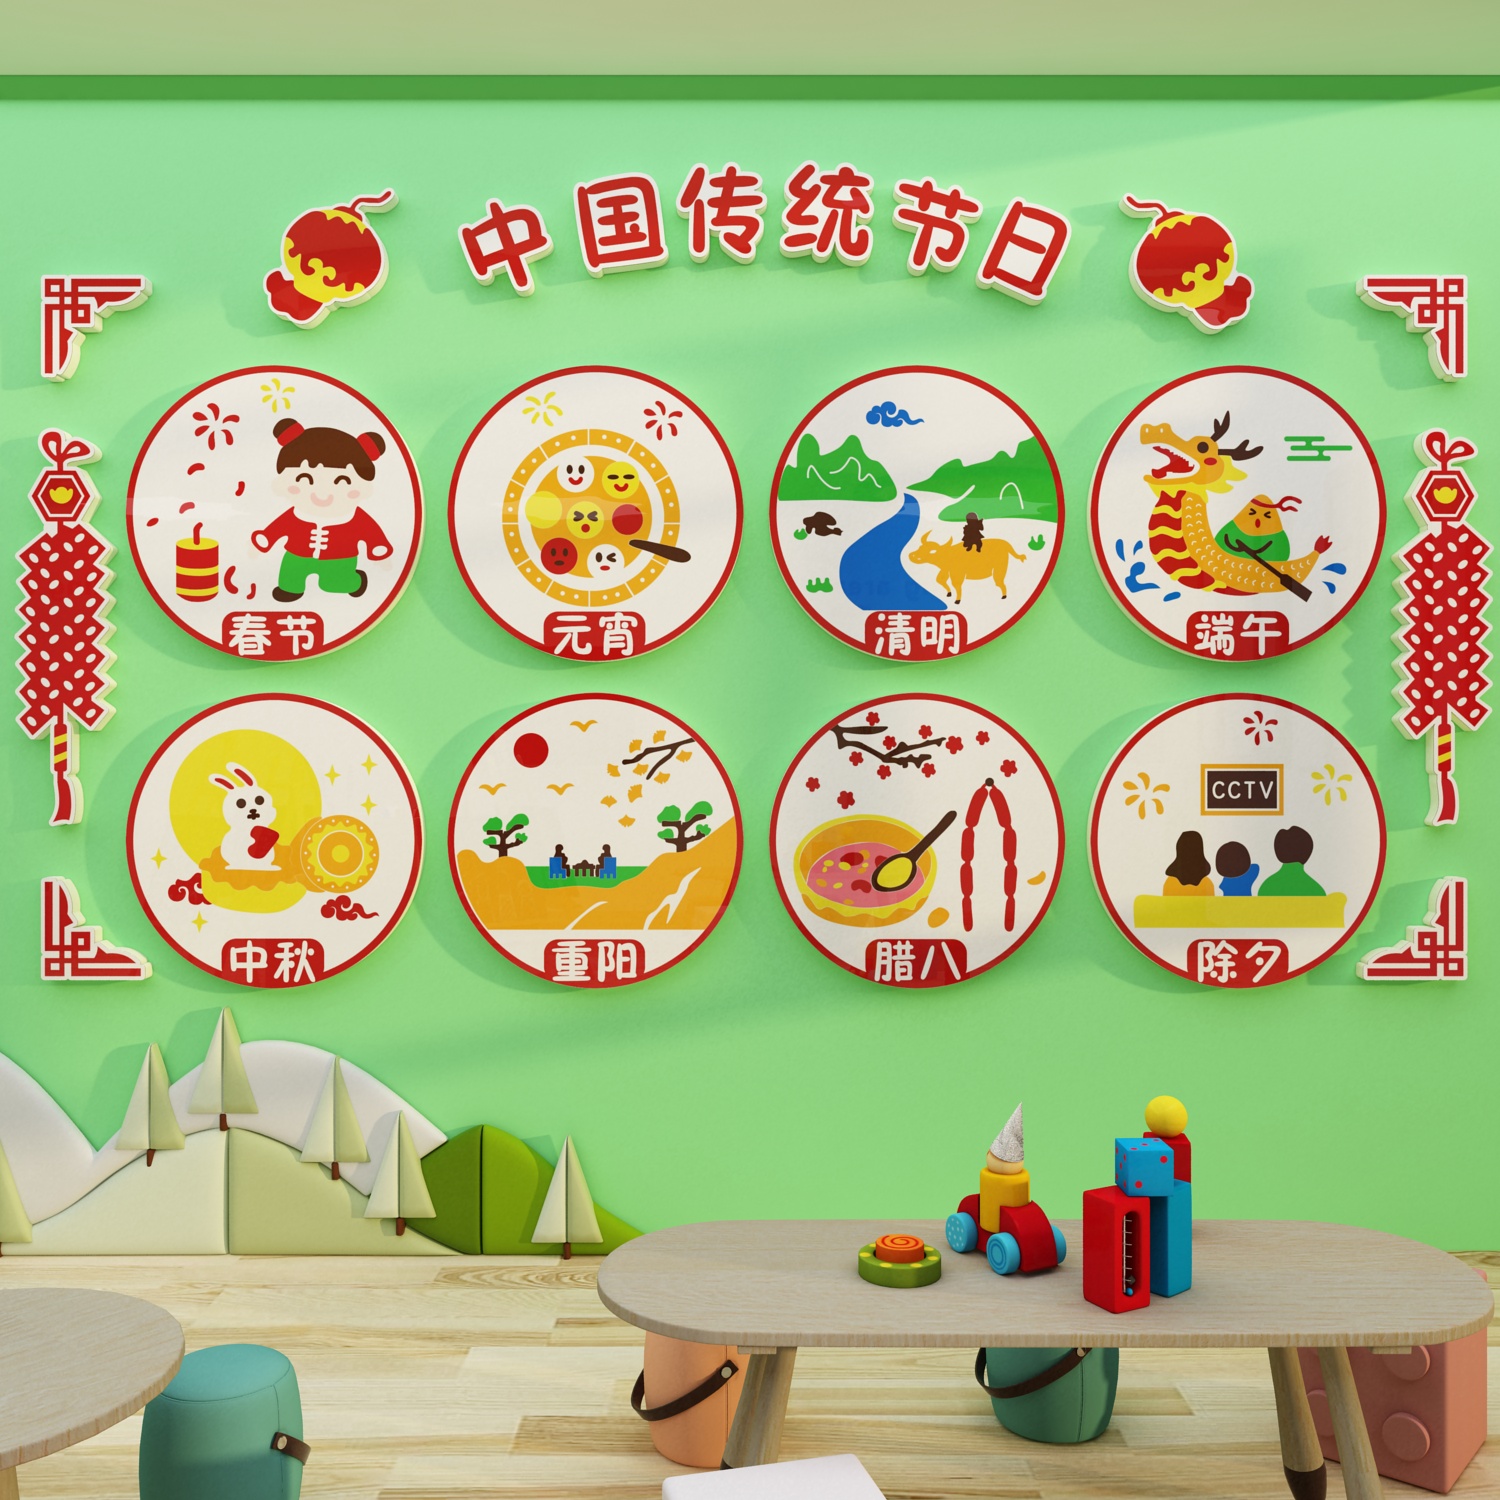 幼儿园传统节日主题文化成品墙面装饰新年元旦环创走廊布置材料画